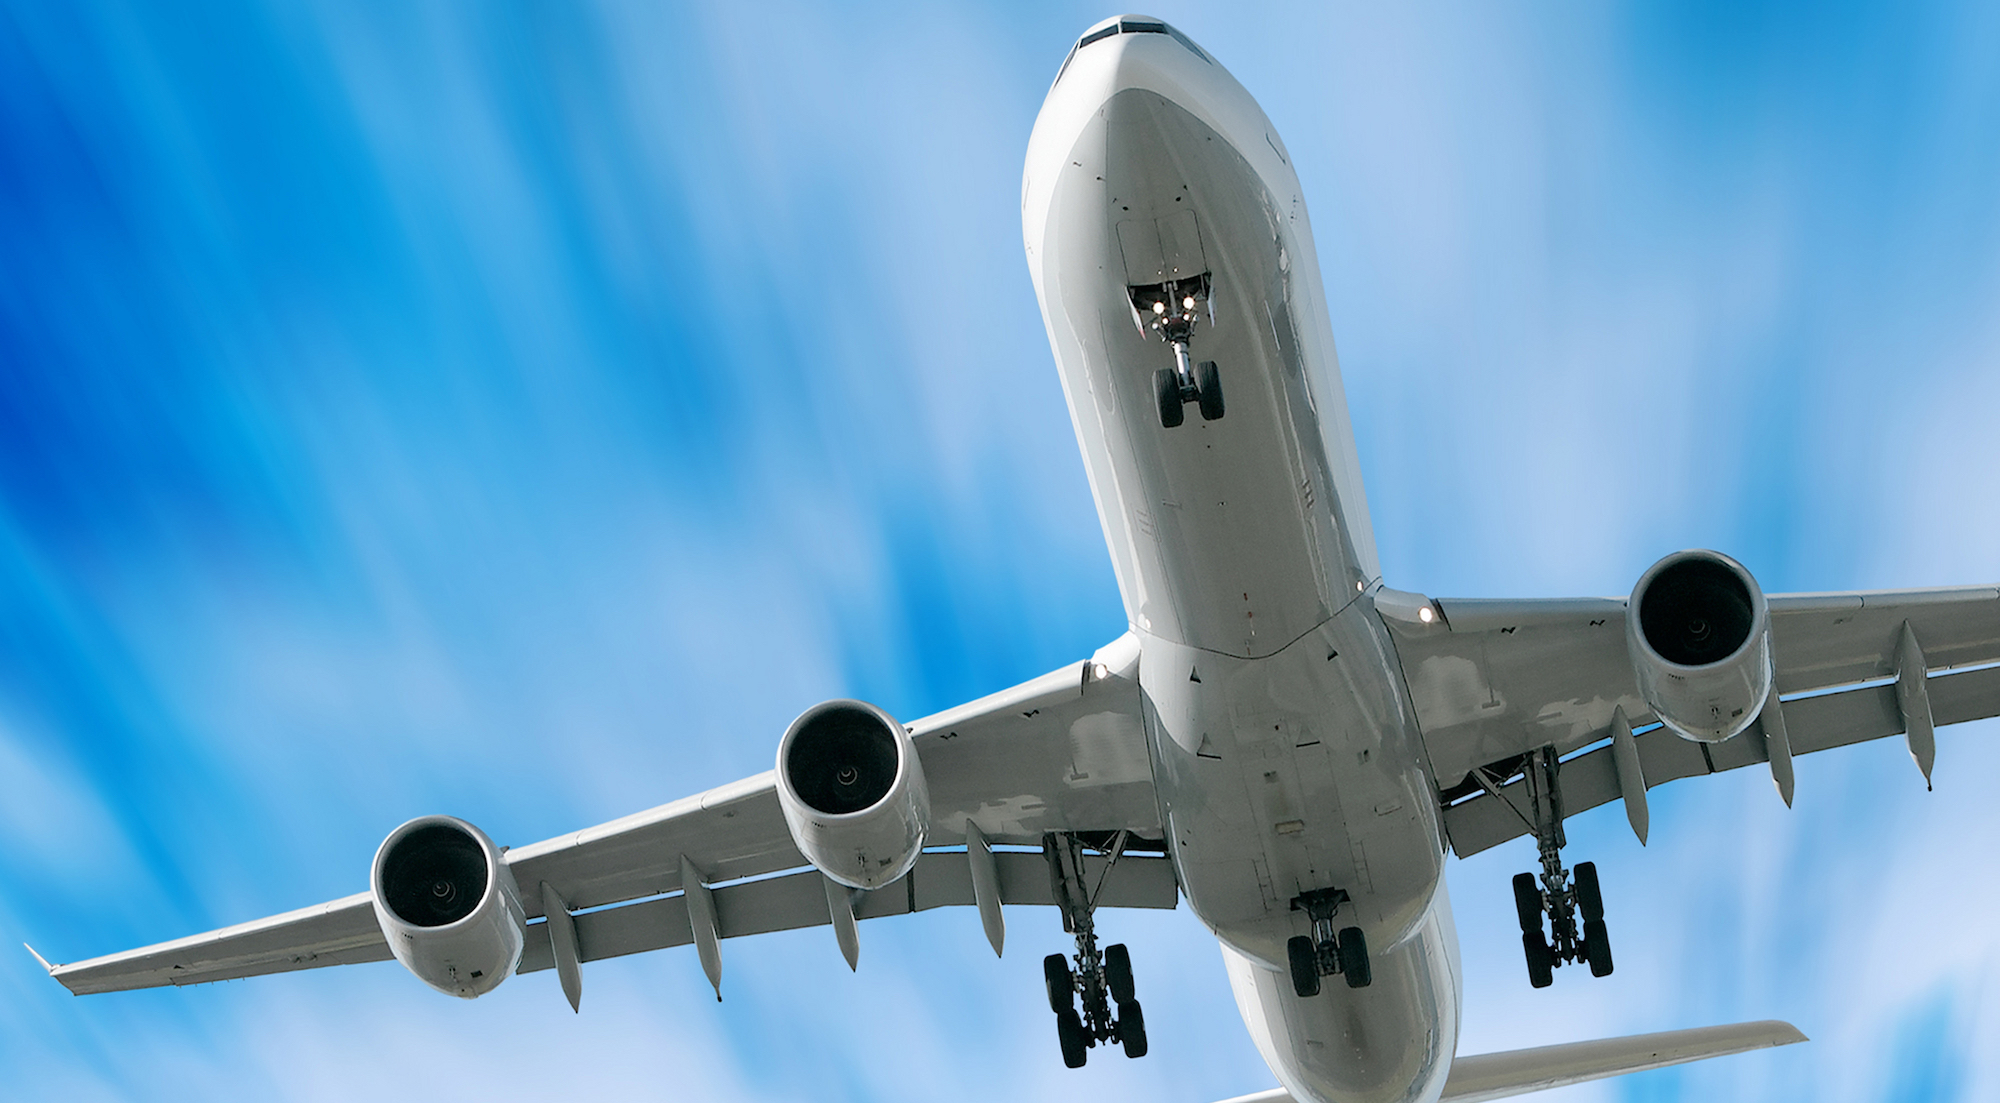 Scegli Argeo Villa per organizzare il tuo trasloco aereo professionale